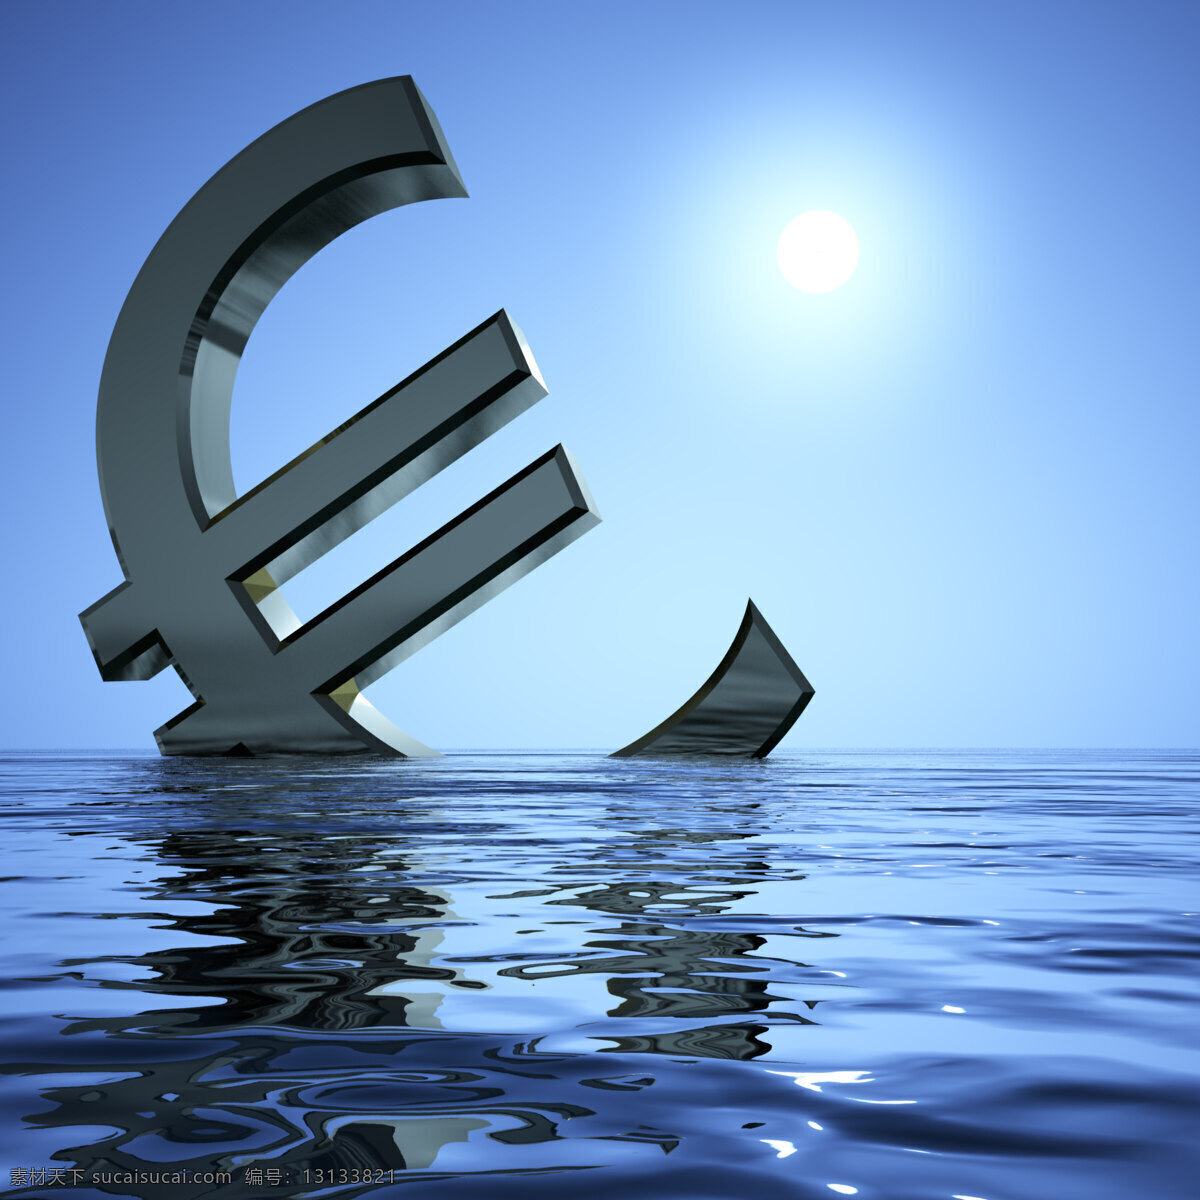 欧元 沉没 海中 出现 萧条 衰退 经济 商务金融